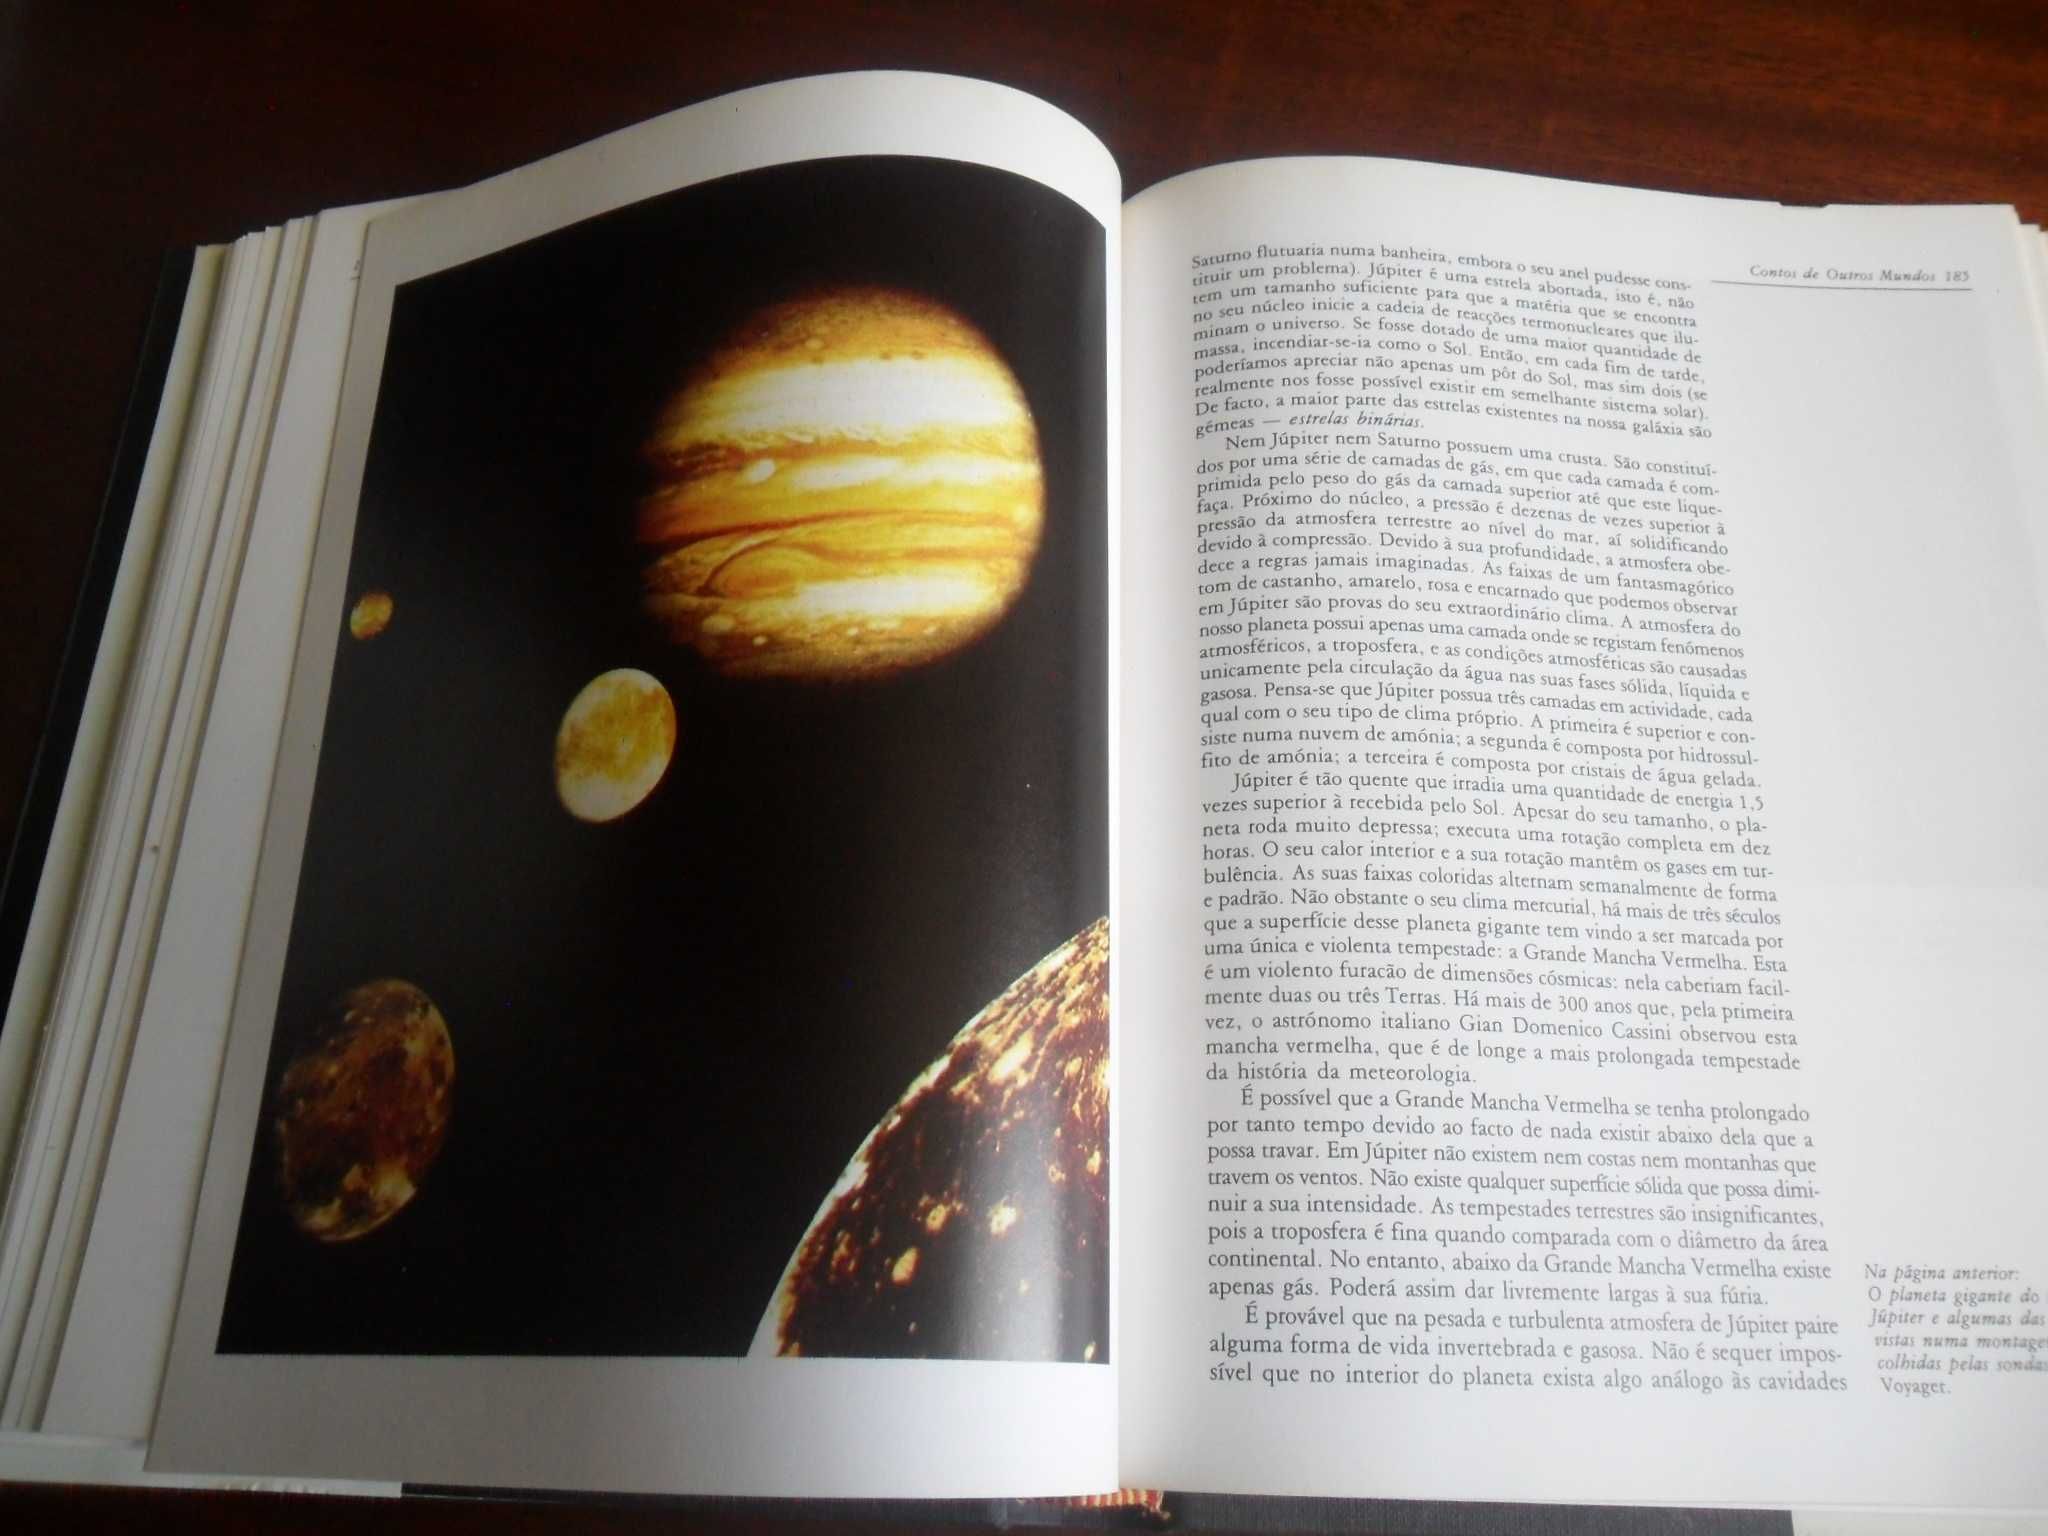 "Planeta Terra" de Jonathan Weiner - 1ª Edição de 1987